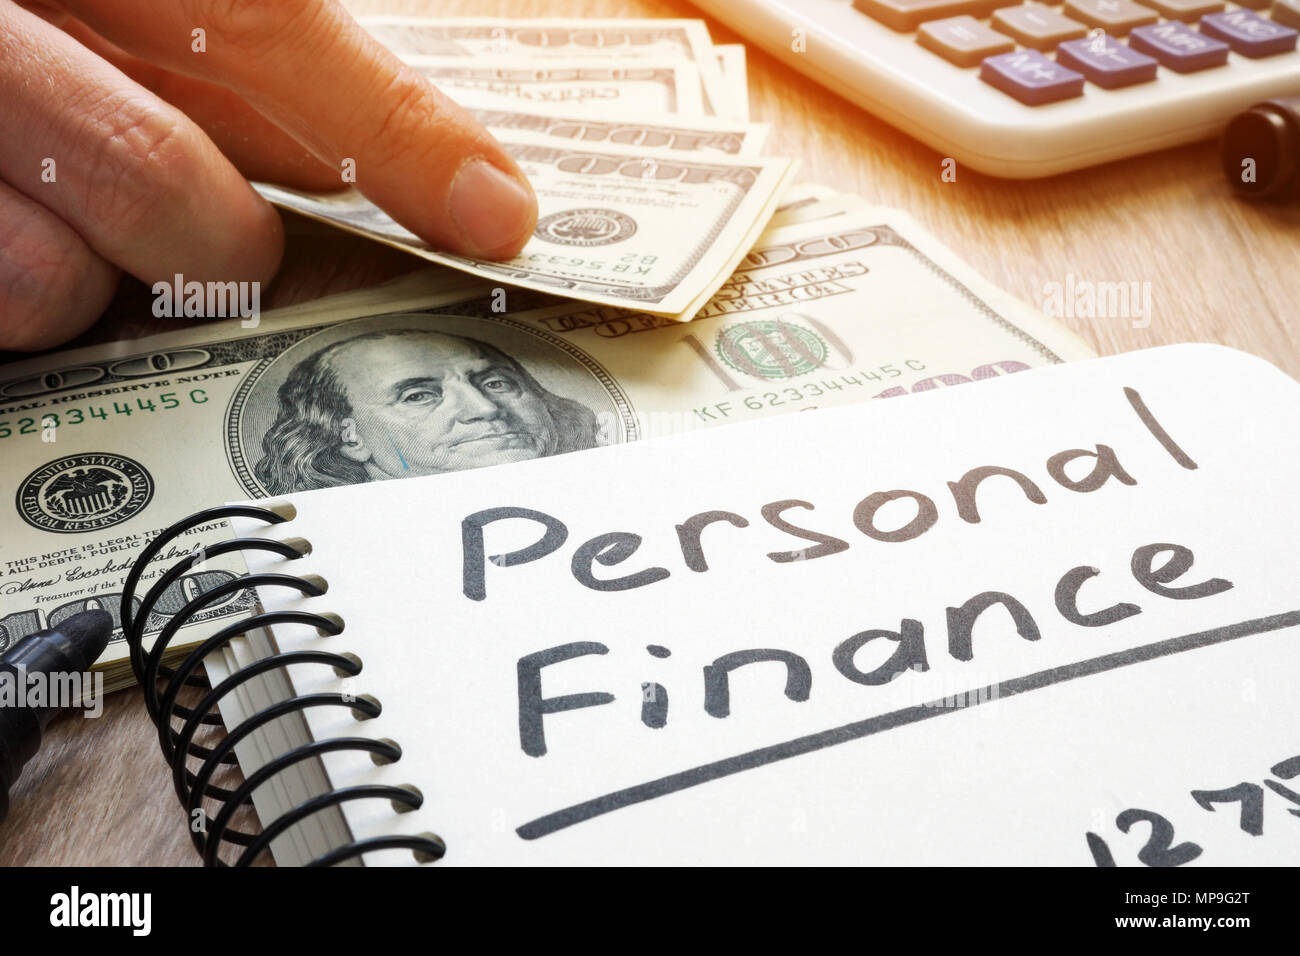 Persönliche Finanzen in einer Anmerkung und Geld geschrieben. Stockfoto